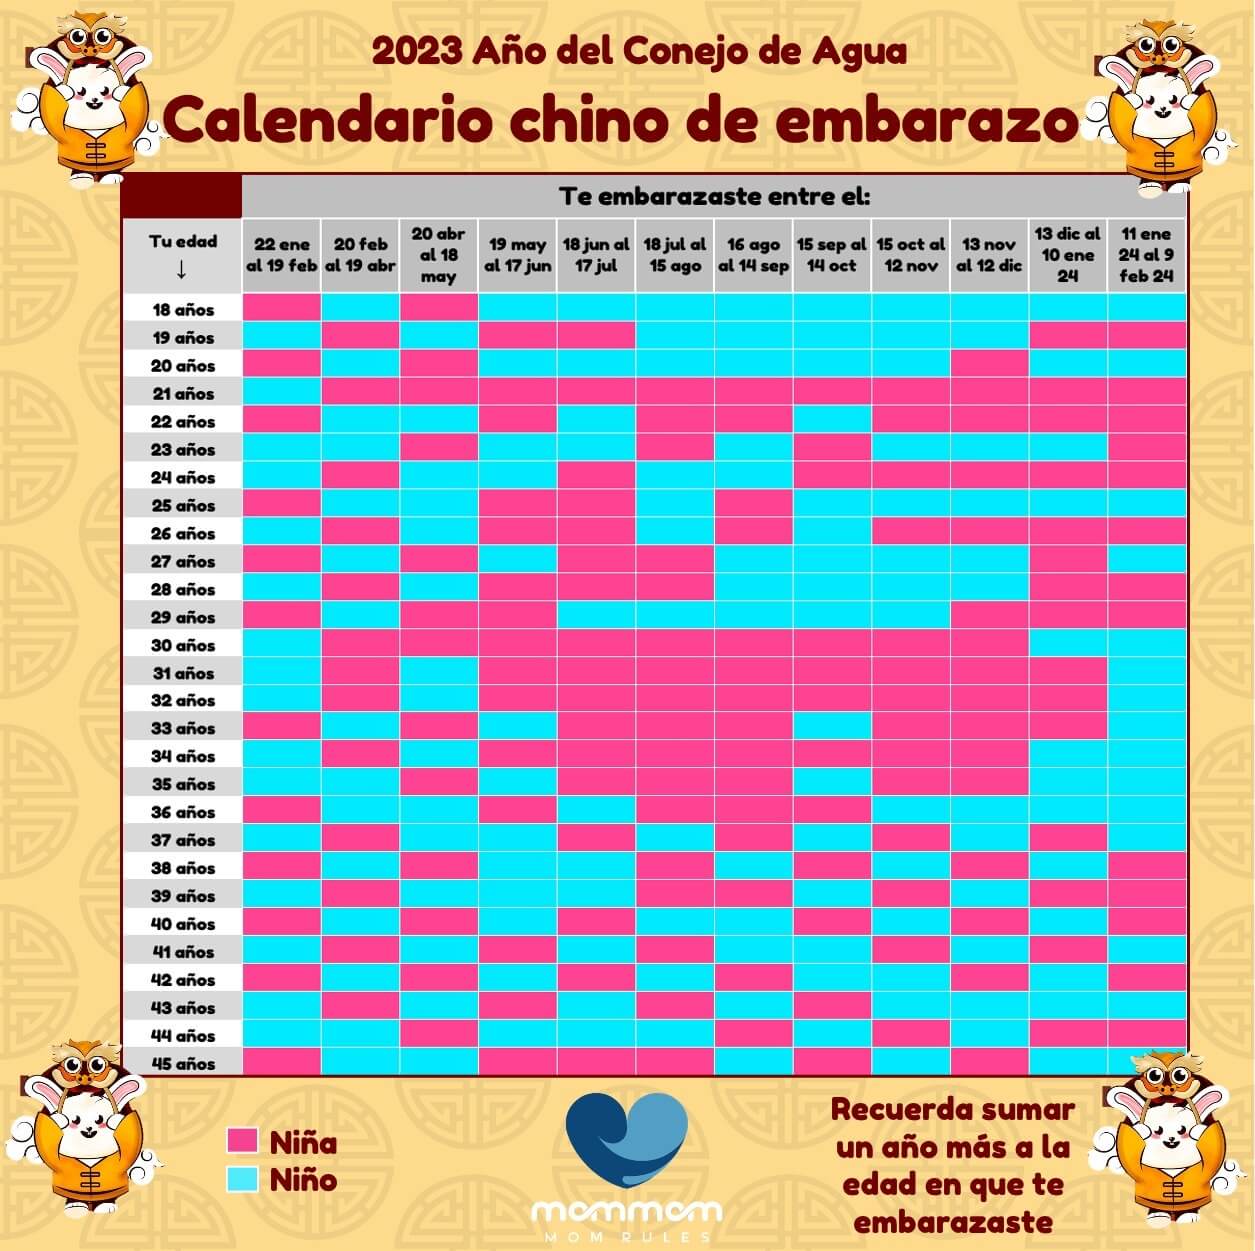 Calendario chino de embarazo 2023 ¿Niño o niña? Descúbrelo